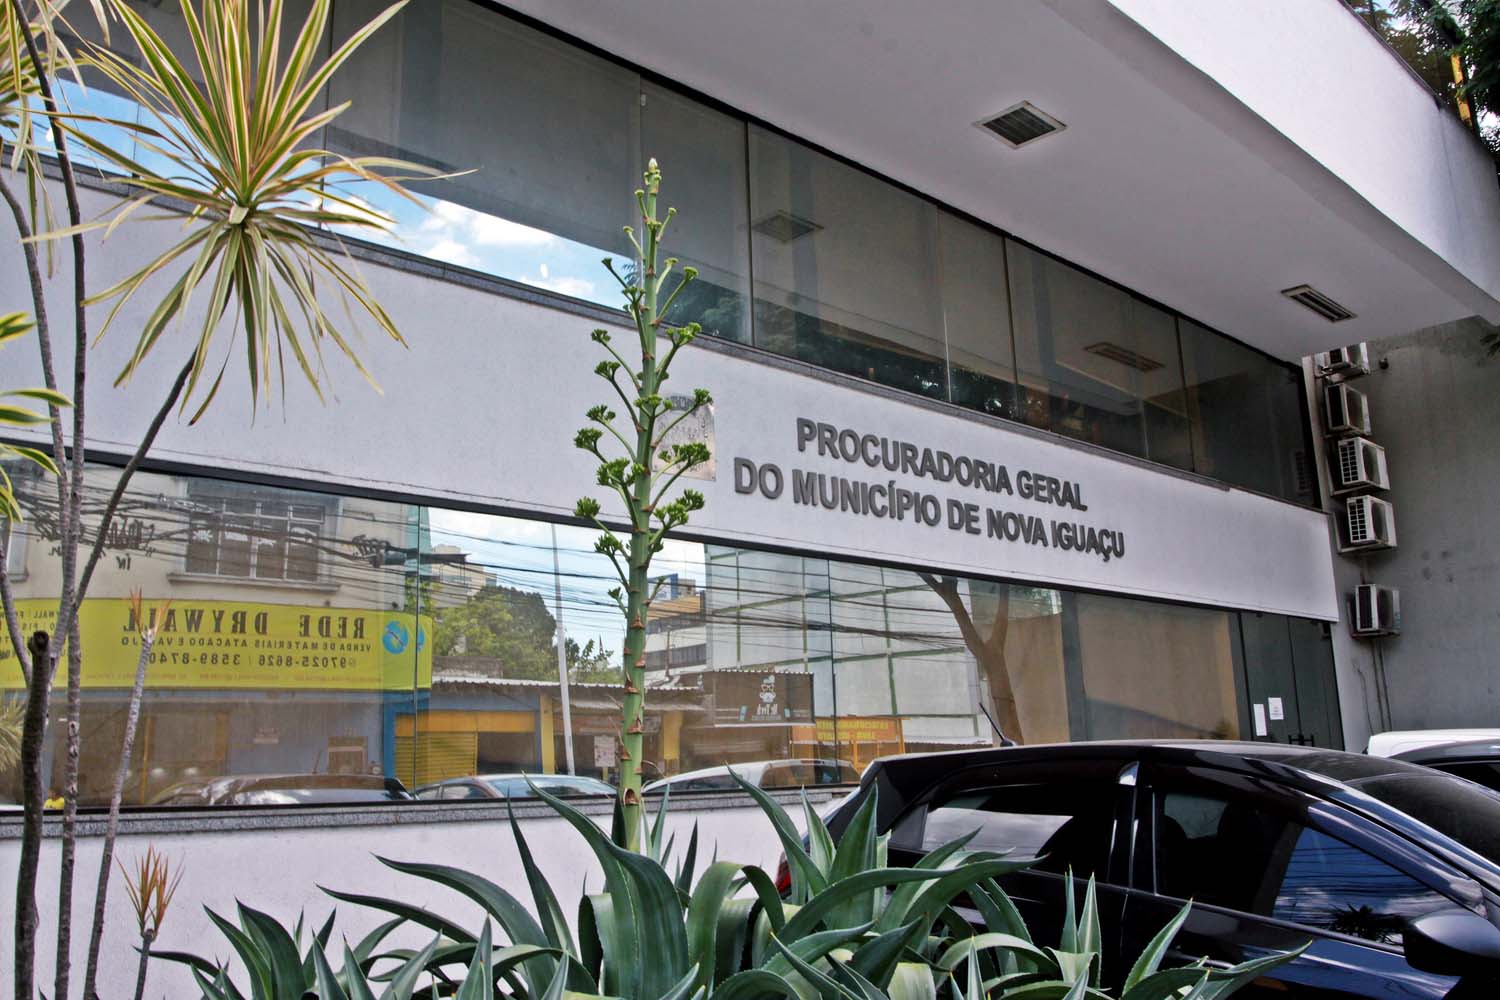 Prorrogado o prazo de inscrições para o Programa de Estágio Forense da Procuradoria Geral do Município de Nova Iguaçu